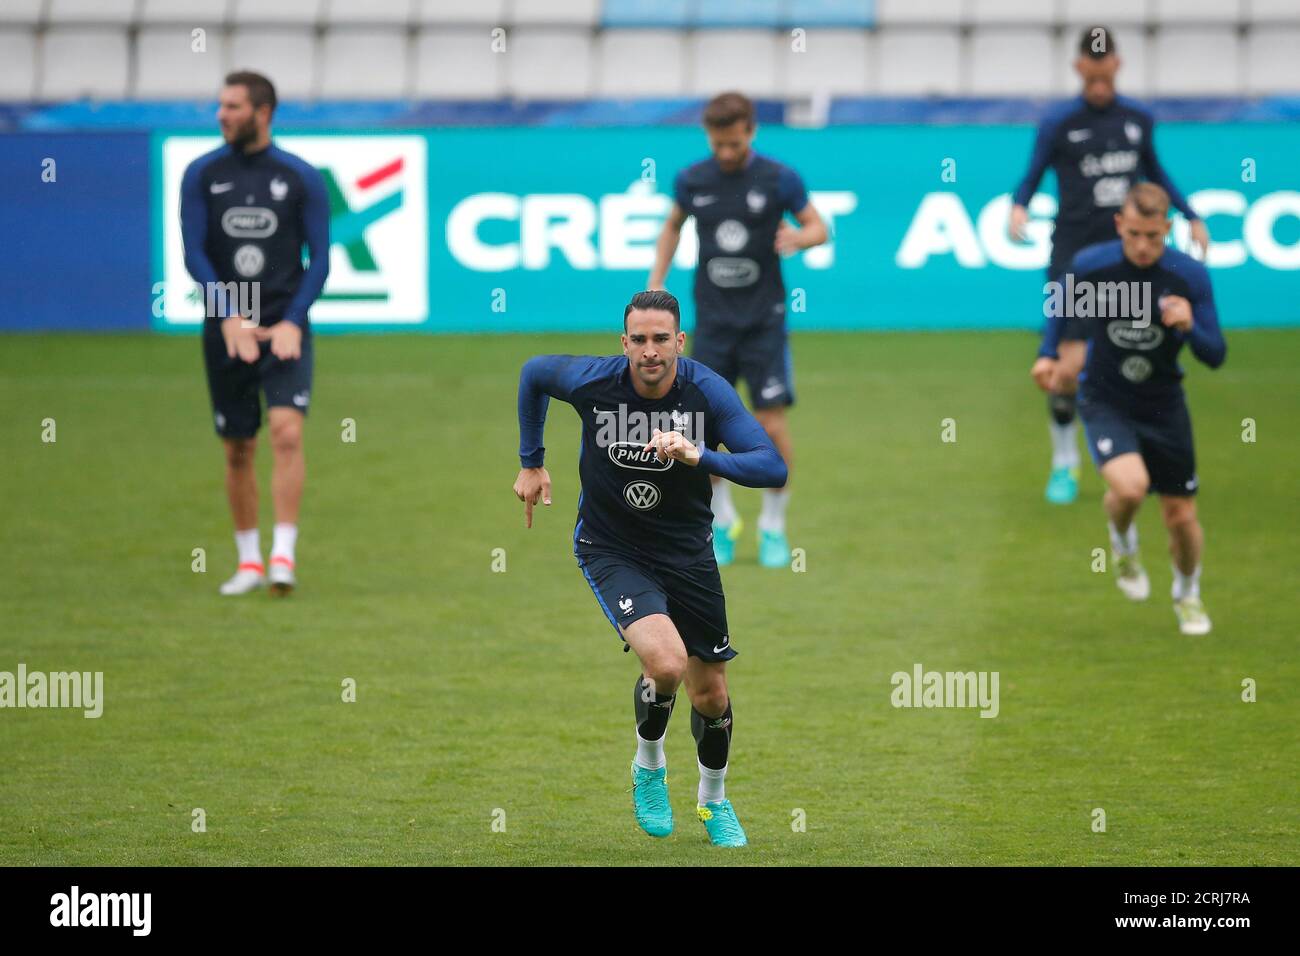 Adil Rami, joueur de l'équipe nationale de football de France, participe à une séance d'entraînement au stade Beaujoire de Nantes, le 29 mai 2016. REUTERS/Stephane Mahé Banque D'Images